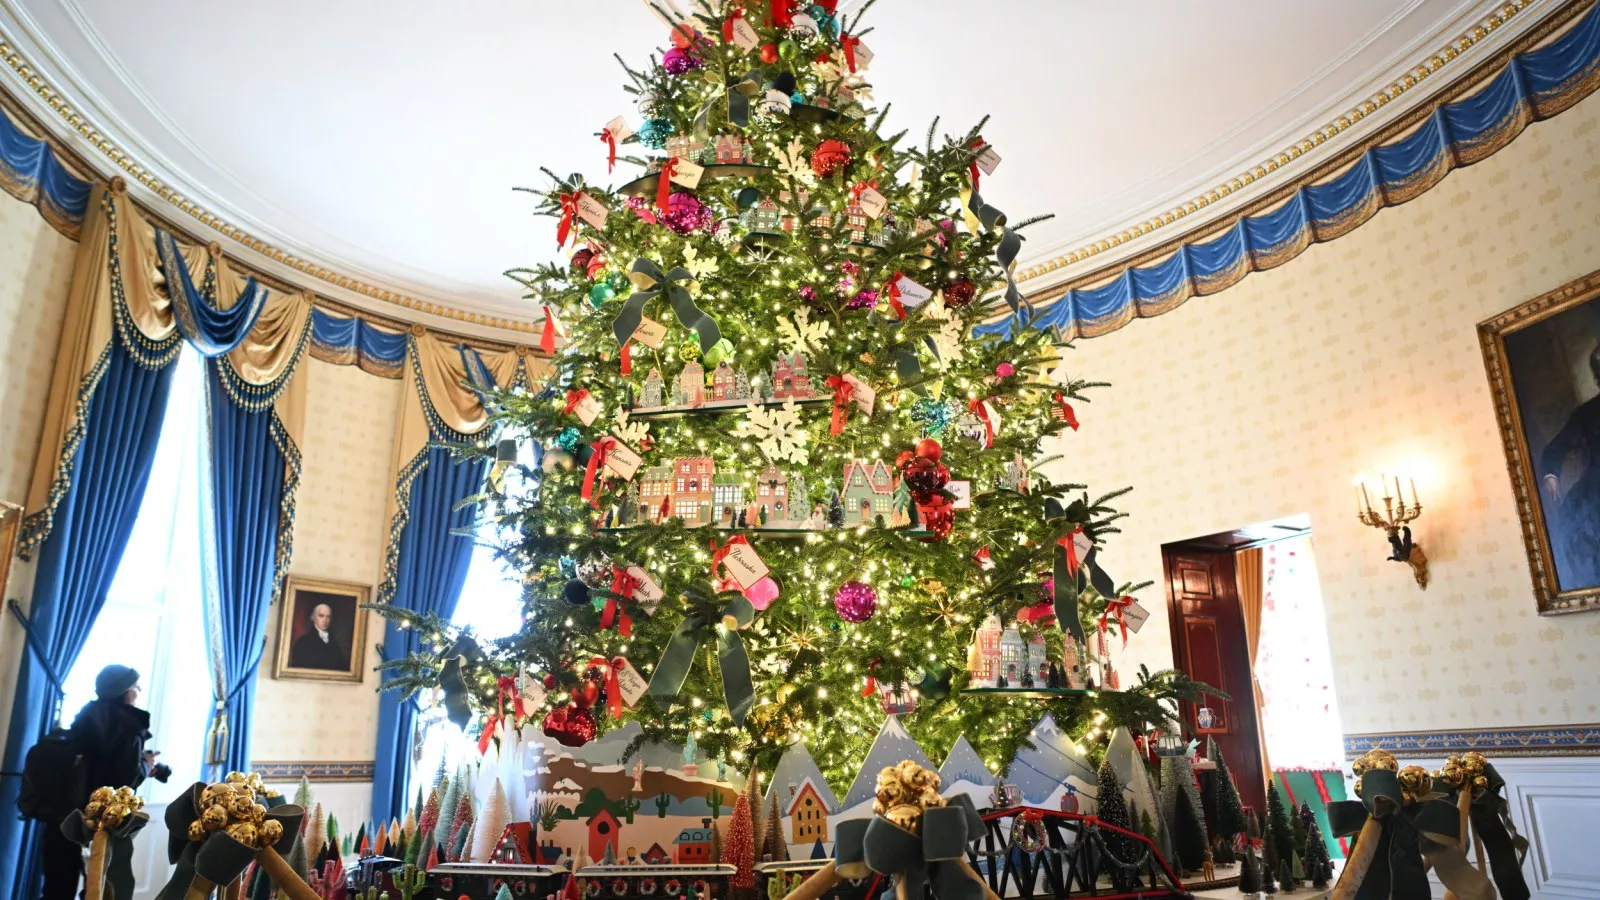 https://d.newsweek.com/en/full/2327012/white-house-christmas-tree-seen.webp?w=1600&h=900&q=88&f=cbf93fa2908c321496ec358e72da4153